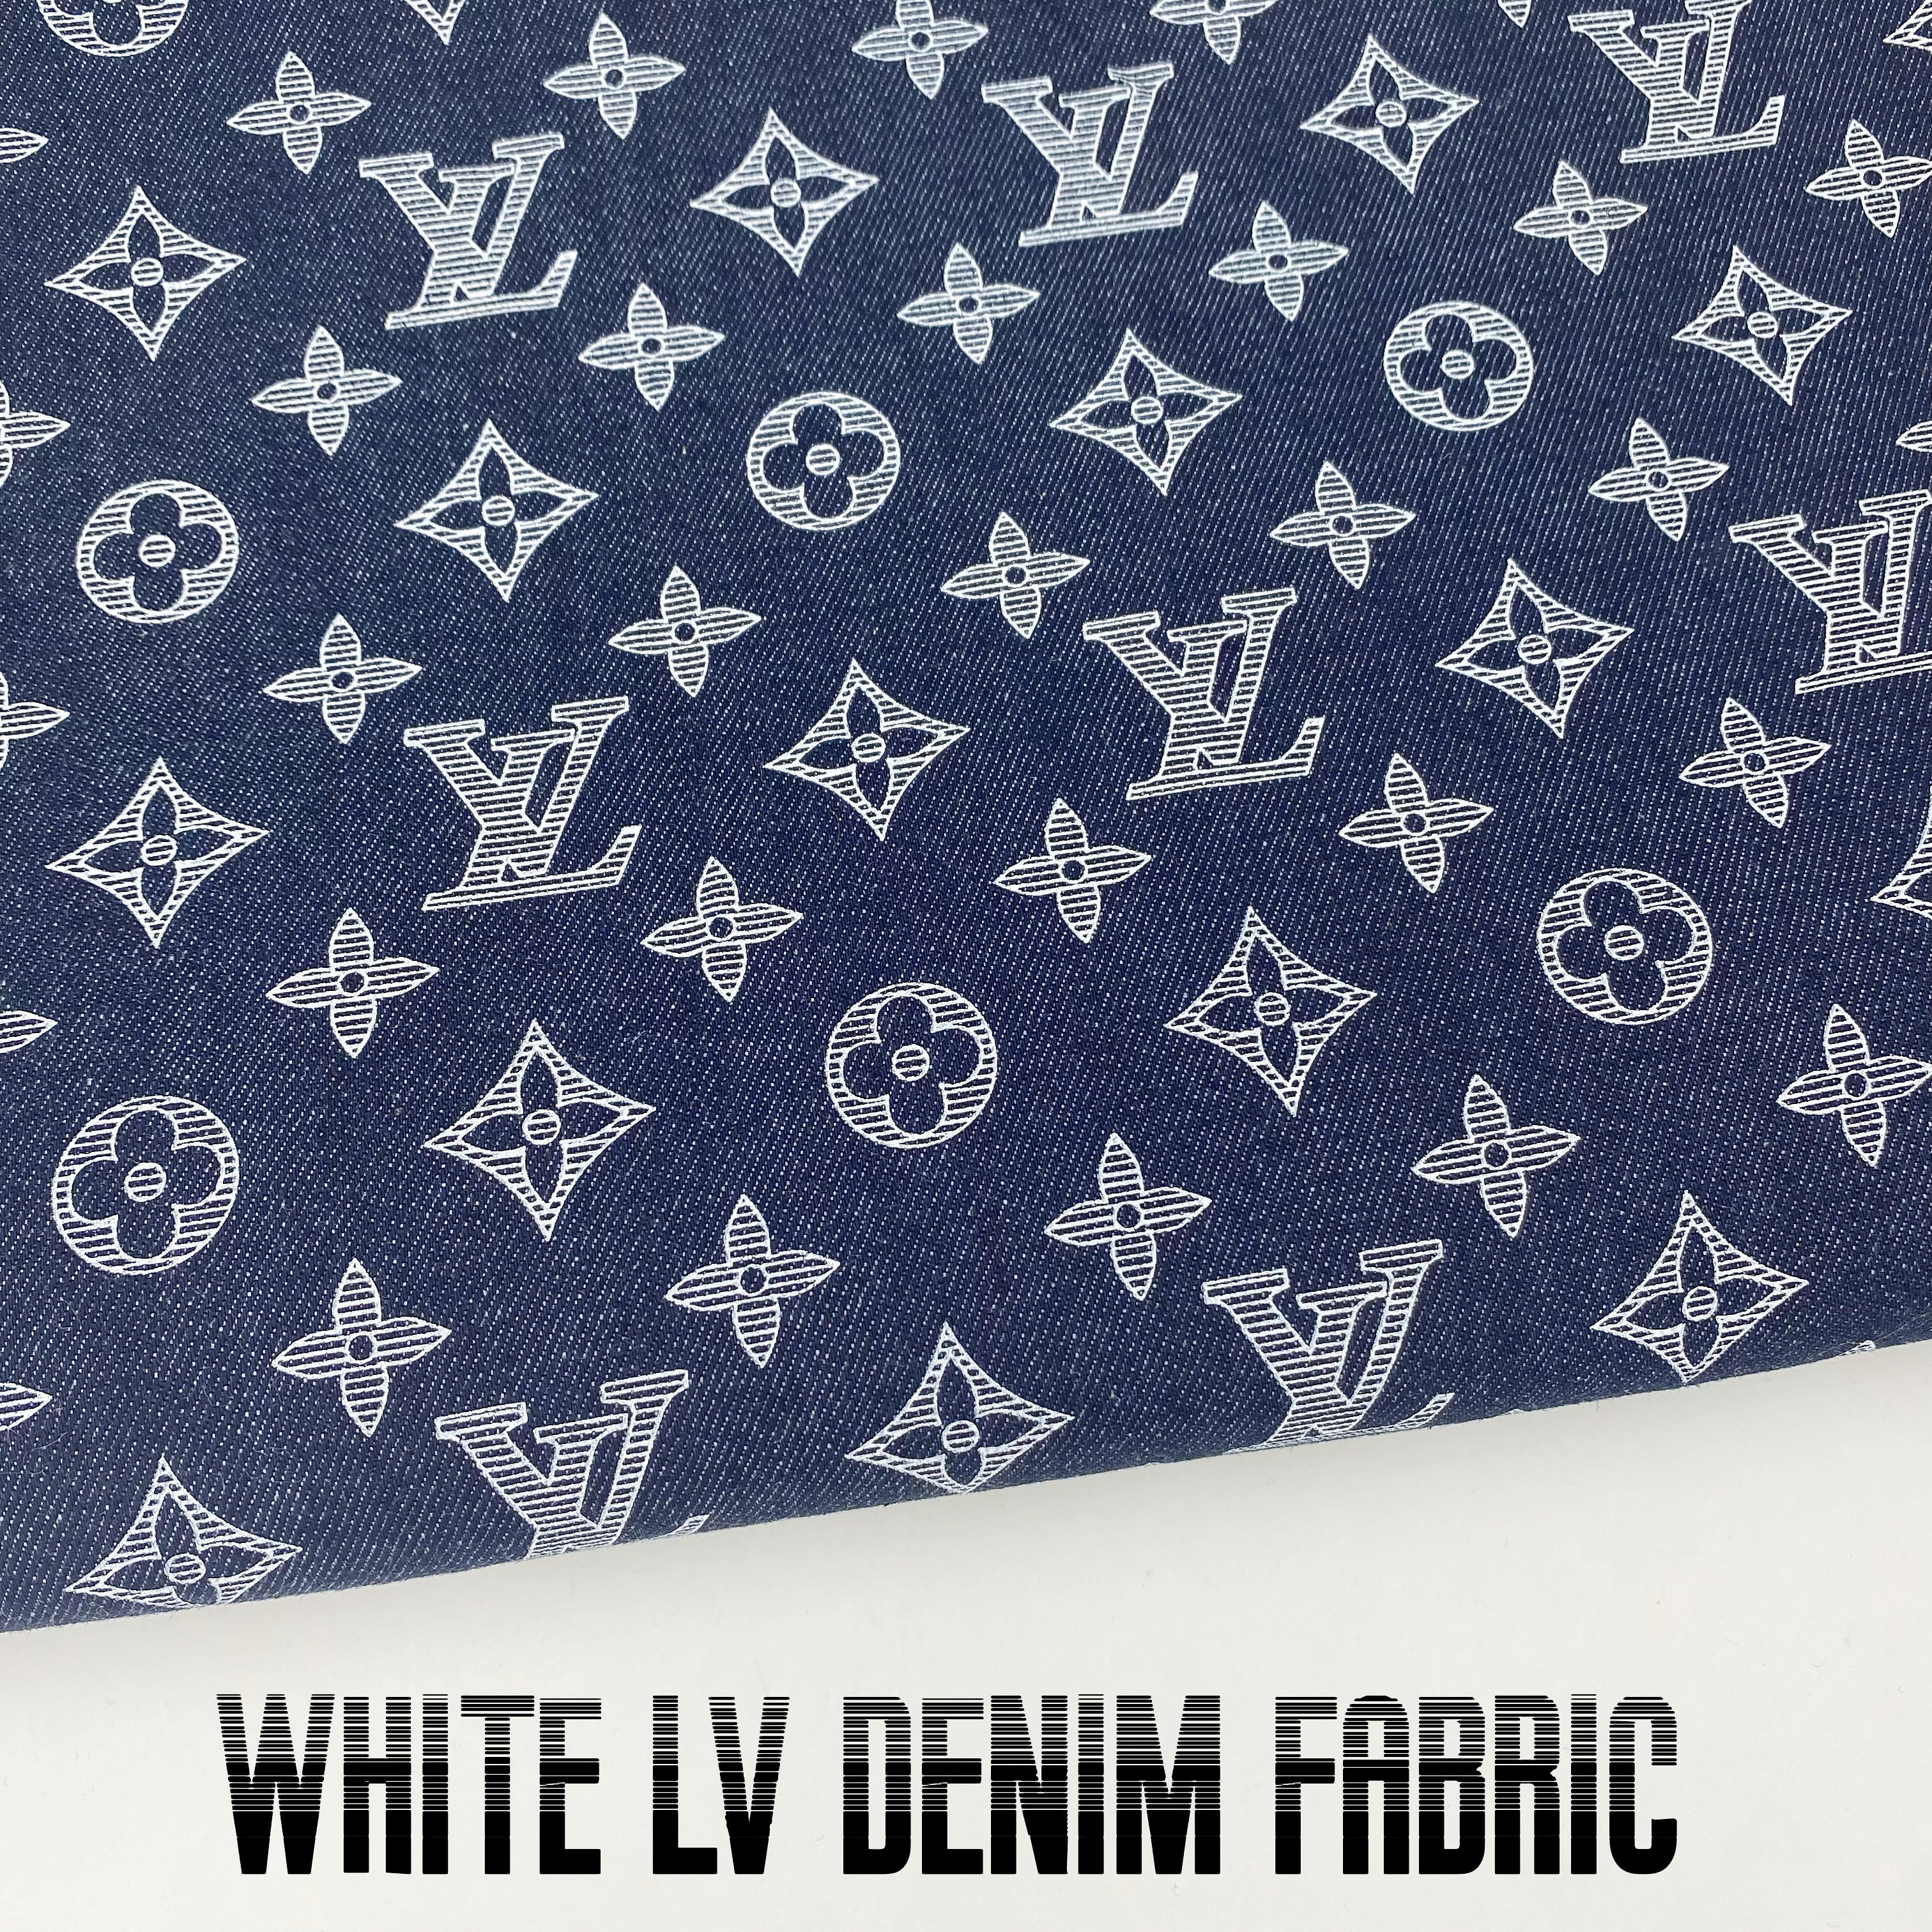 Selected Quality LV Digital Printed Cotton Stretch Denim Fabrics